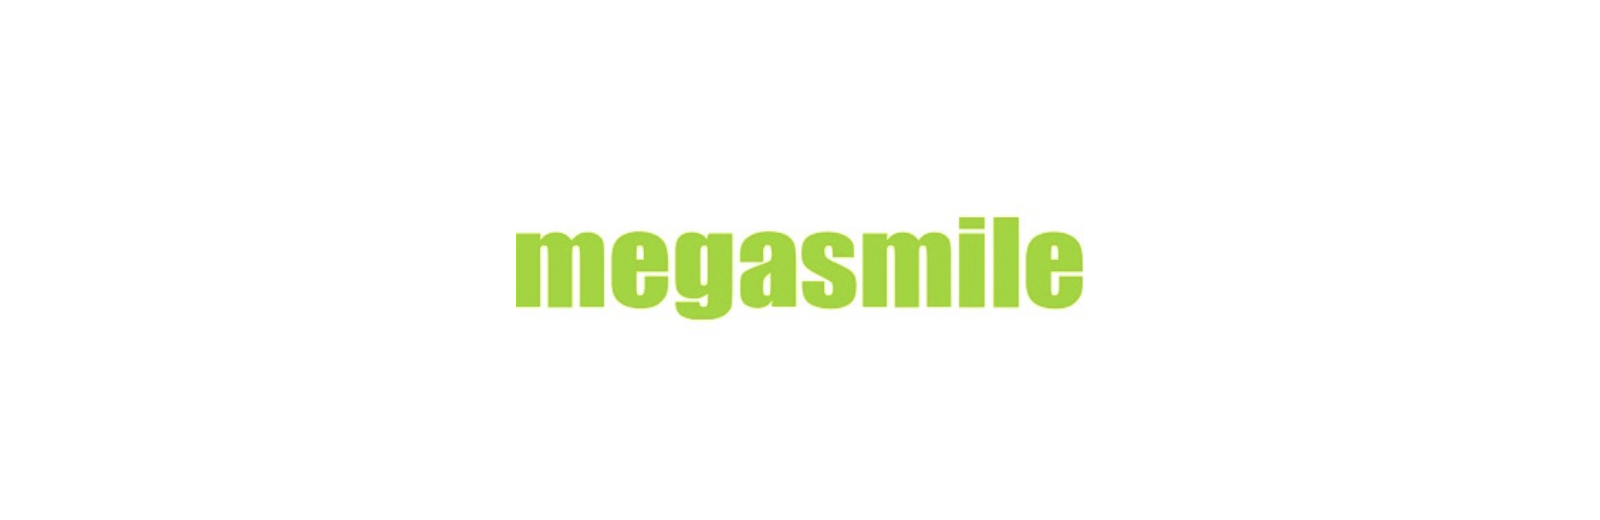 Megasmile